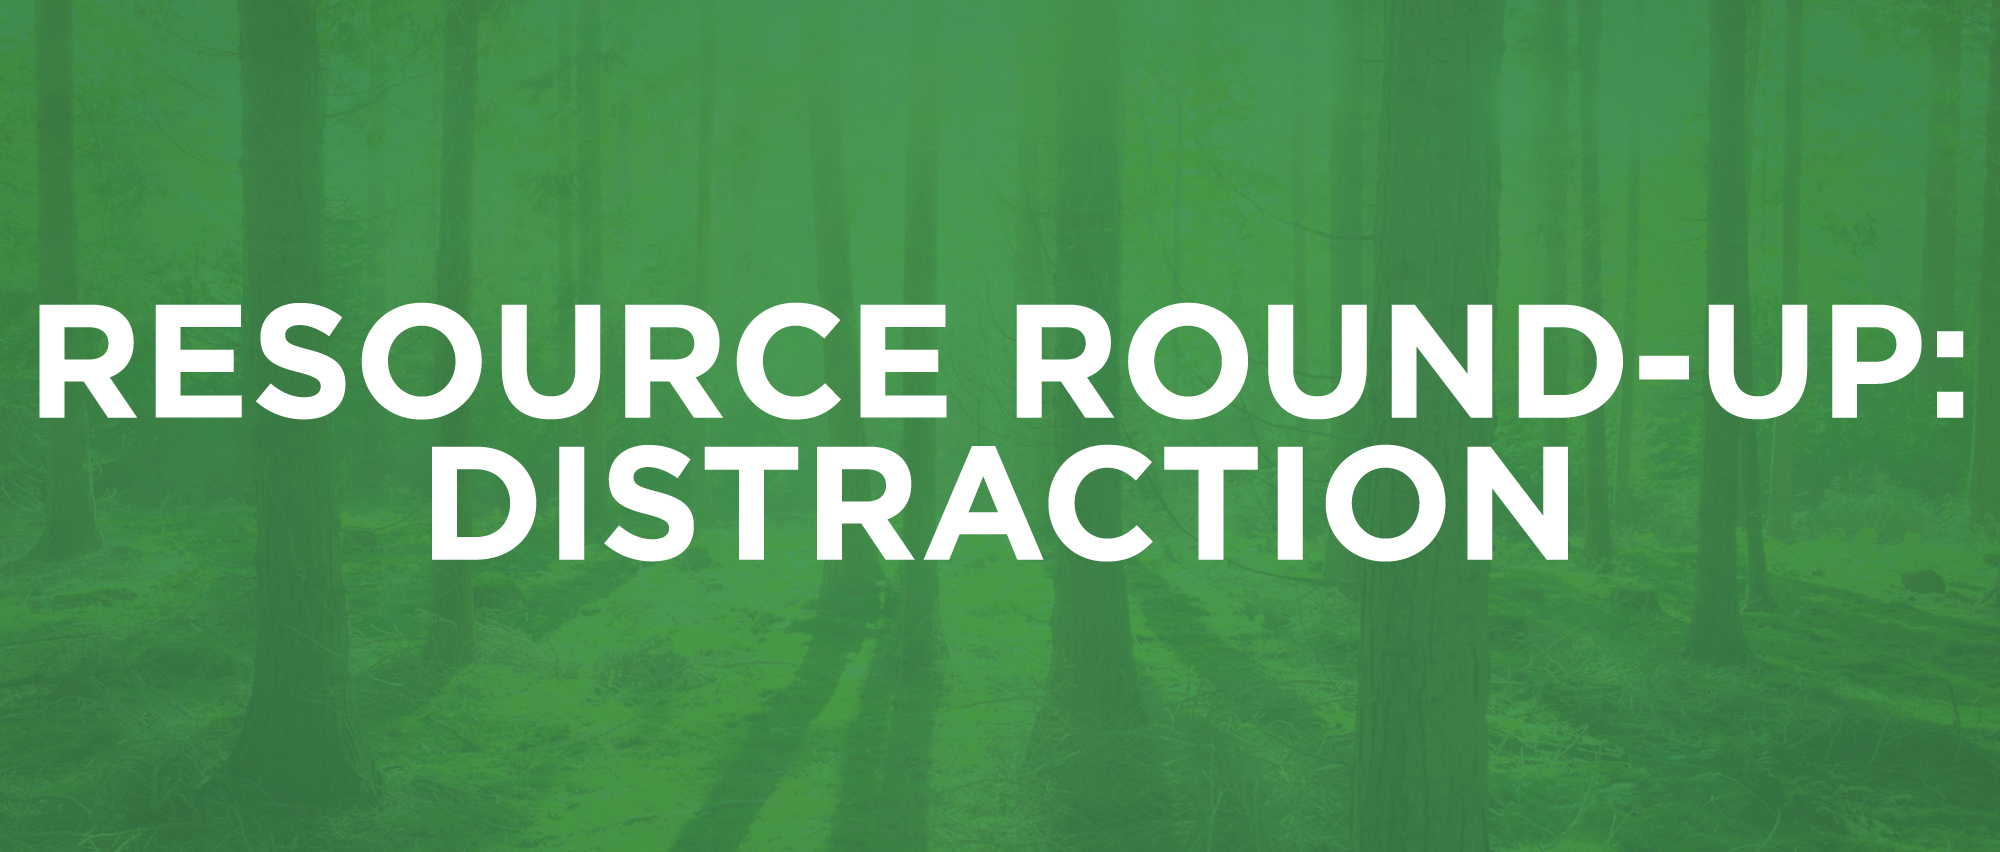 ResourceRoundup-2-Distraction.jpg